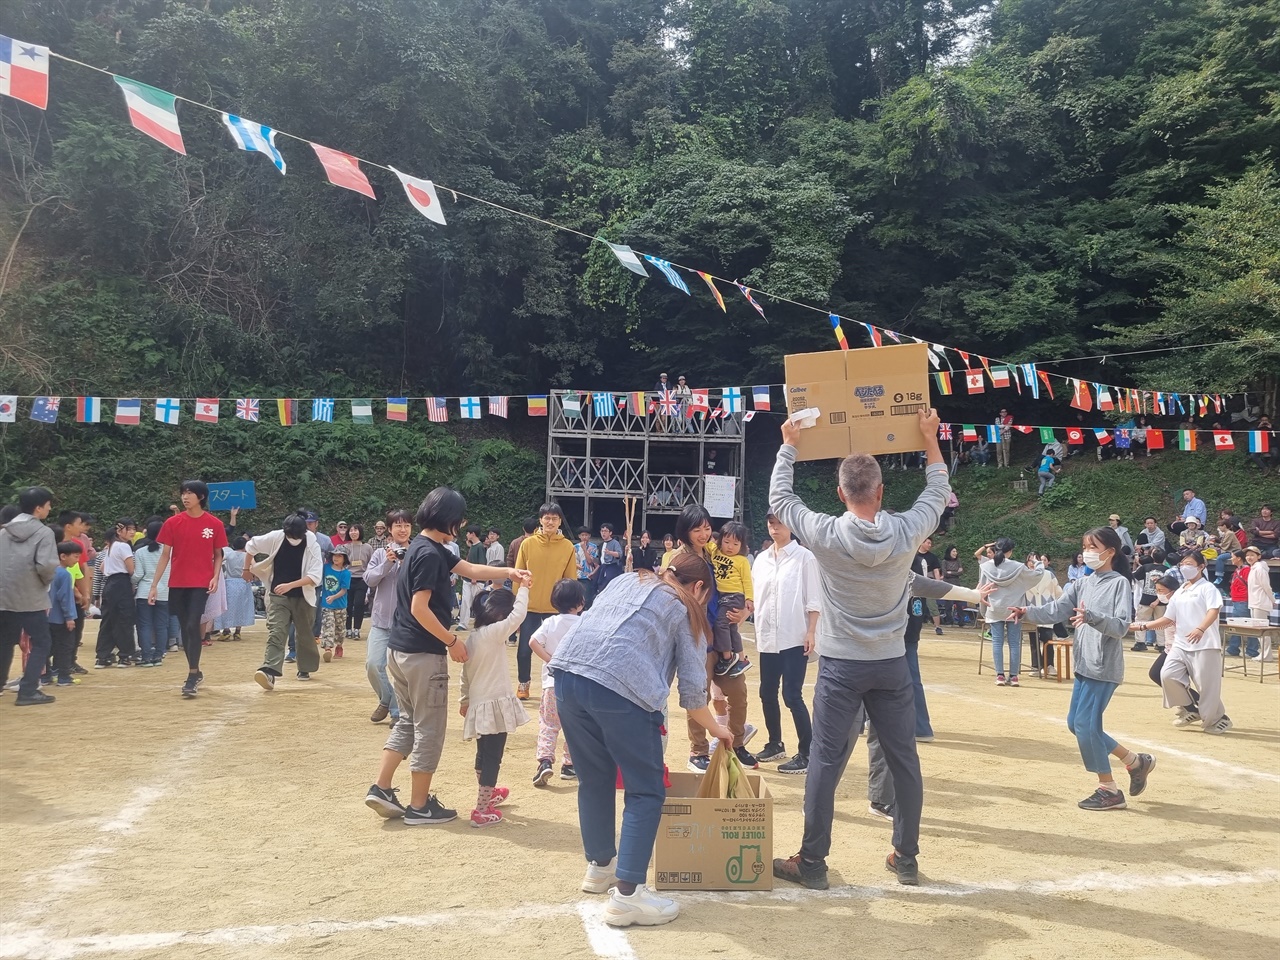 키노쿠니학교 운동회, 미션달리기 경기에 참가자를 모집하자 운동장에 있던 대부분의 사람들이 진행팀의 안내 푯말 앞에 모여든다.